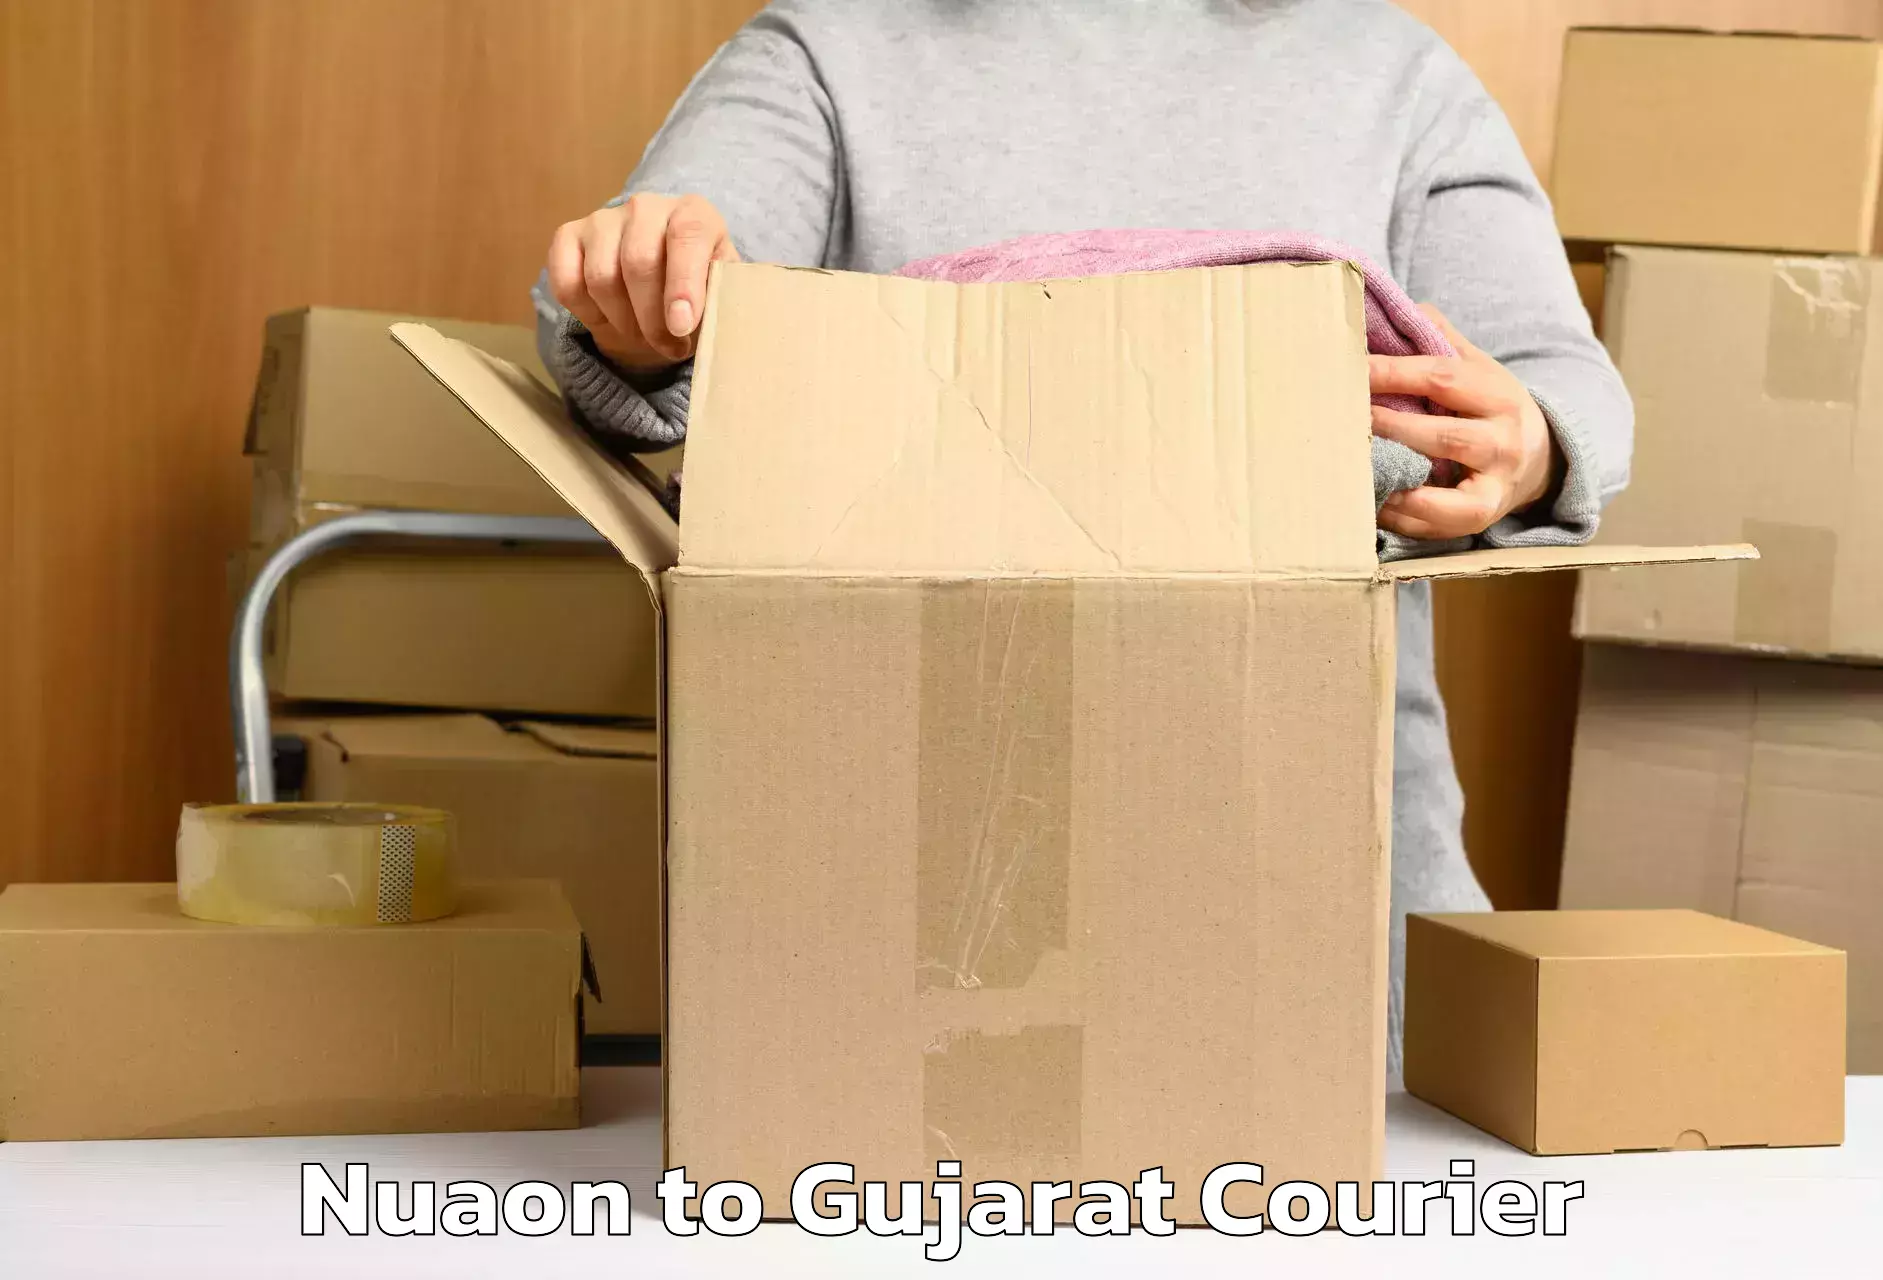 Door-to-door baggage service Nuaon to Surat